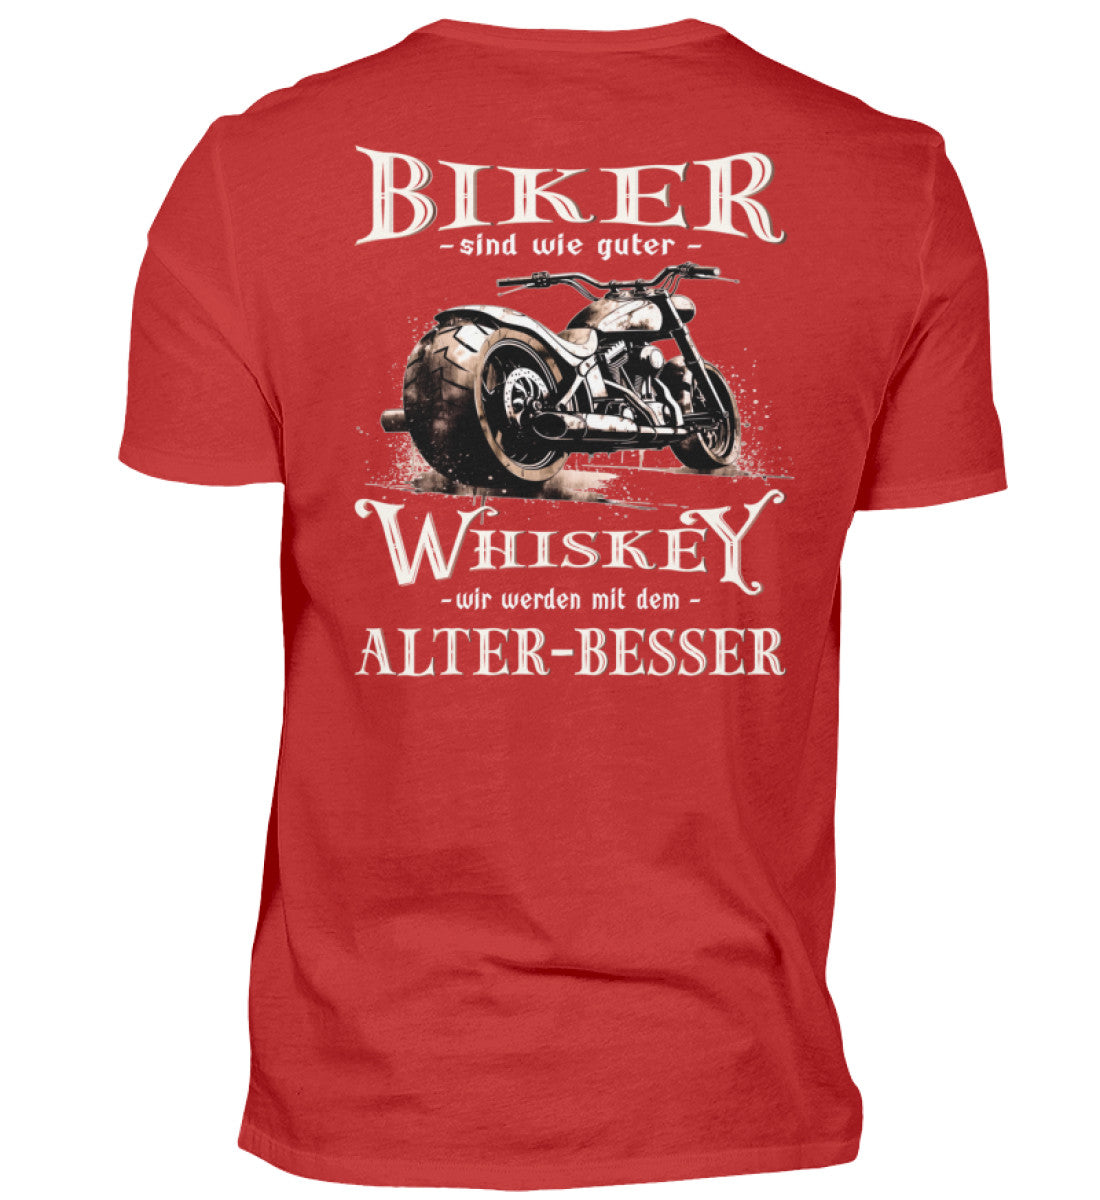 Biker T-Shirt mit einem vintage Aufdruck, Biker sind wie gute Whiskey - wir werden mit dem Alter besser mit Back Print in rot. 